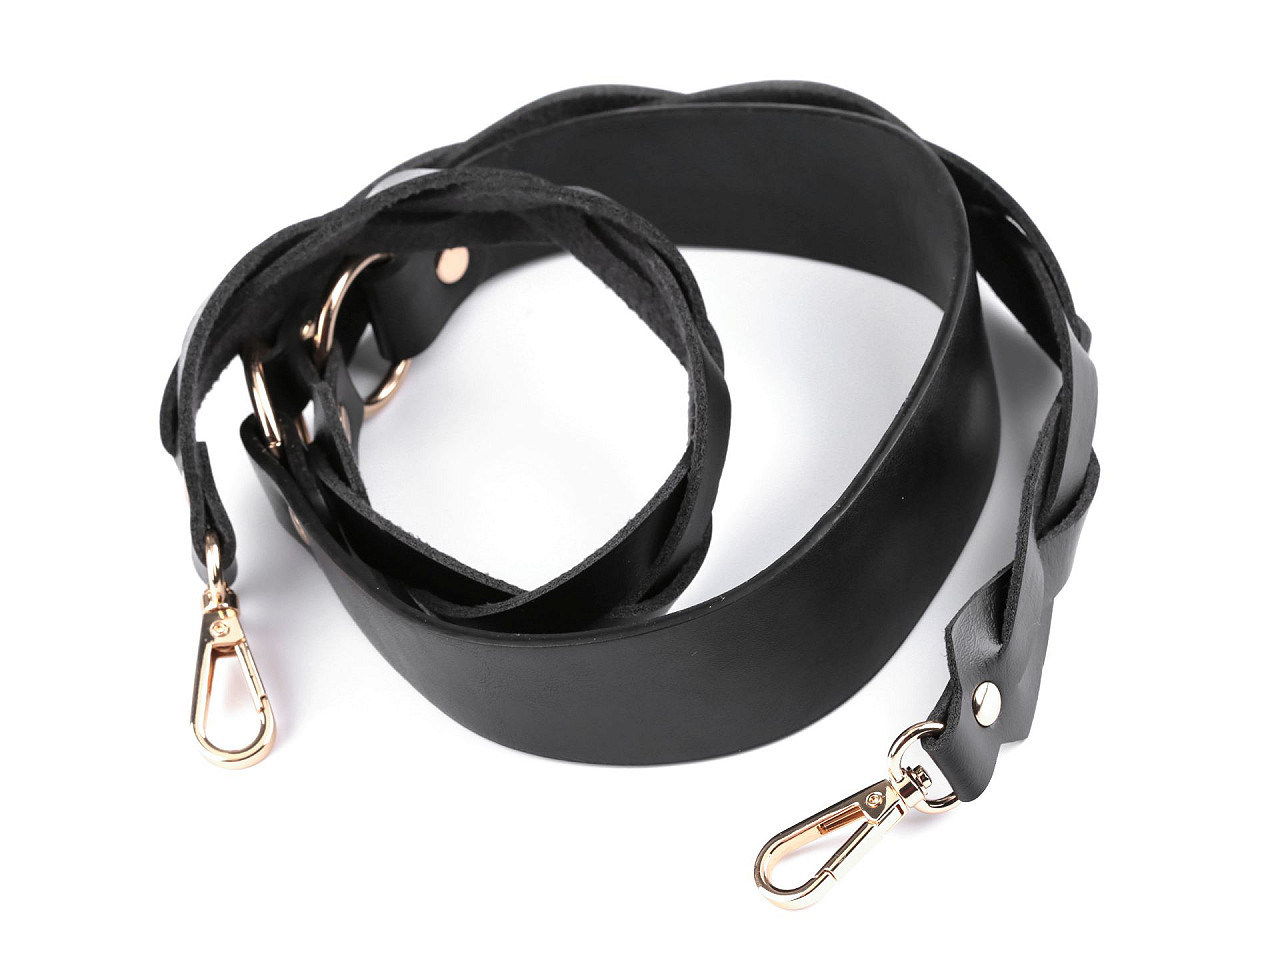 Koženkový popruh / ucho na kabelku s karabinami šíře 2,5-4 cm, barva černá zlatá